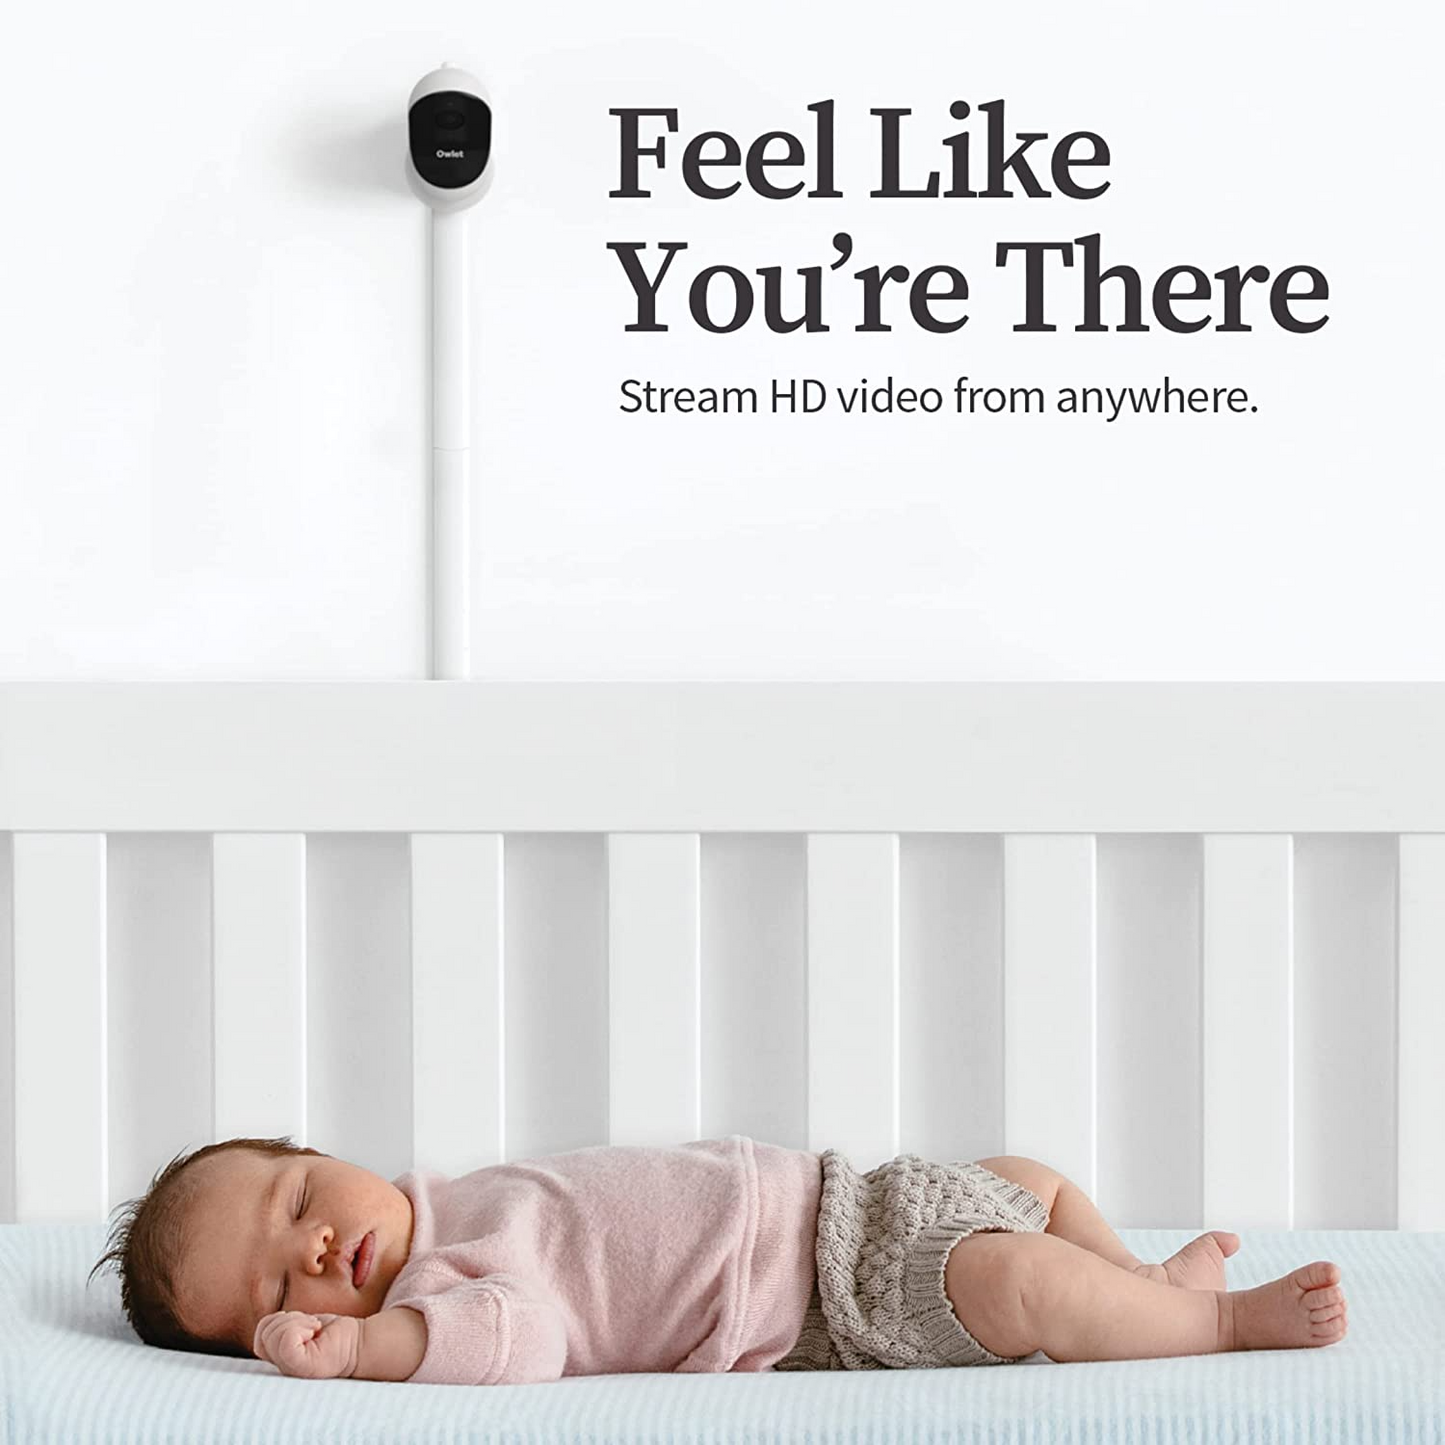 Owlet Monitor de bebê Cam 2 com câmera e áudio - Vídeo HD - Visão noturna - Compatível com iOS e Android